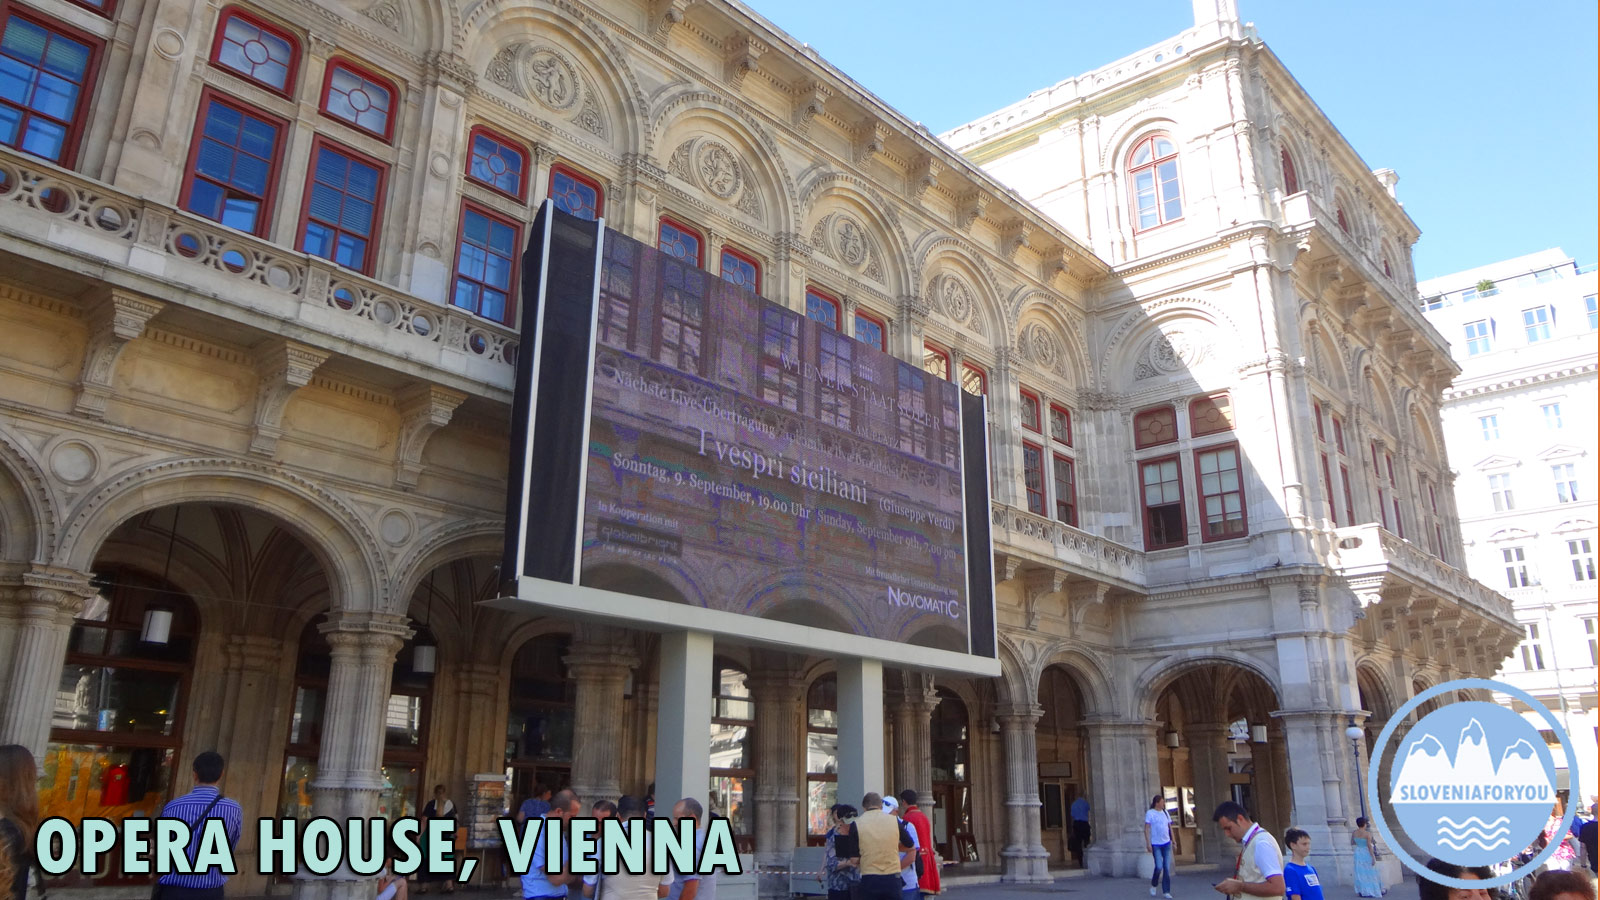 Opera House, Vienna, Sloveniaforyou